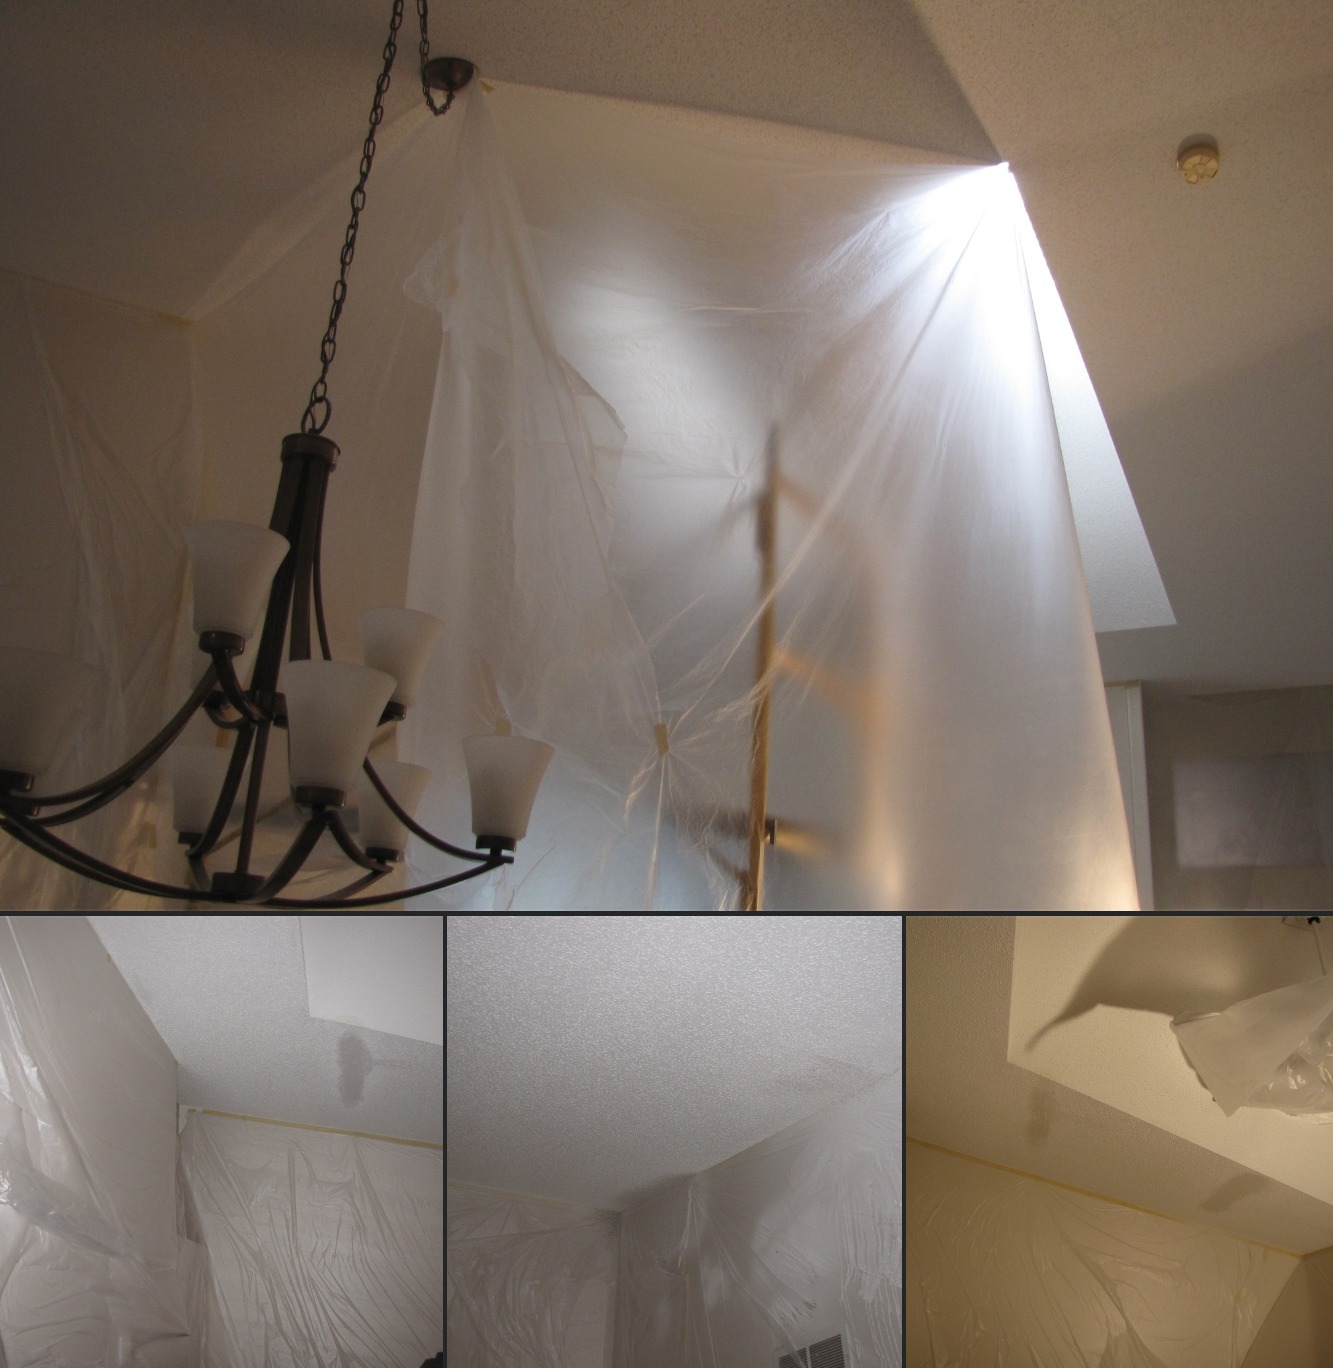 Carrigan Painting portfolio image of popcorn ceiling crack repair